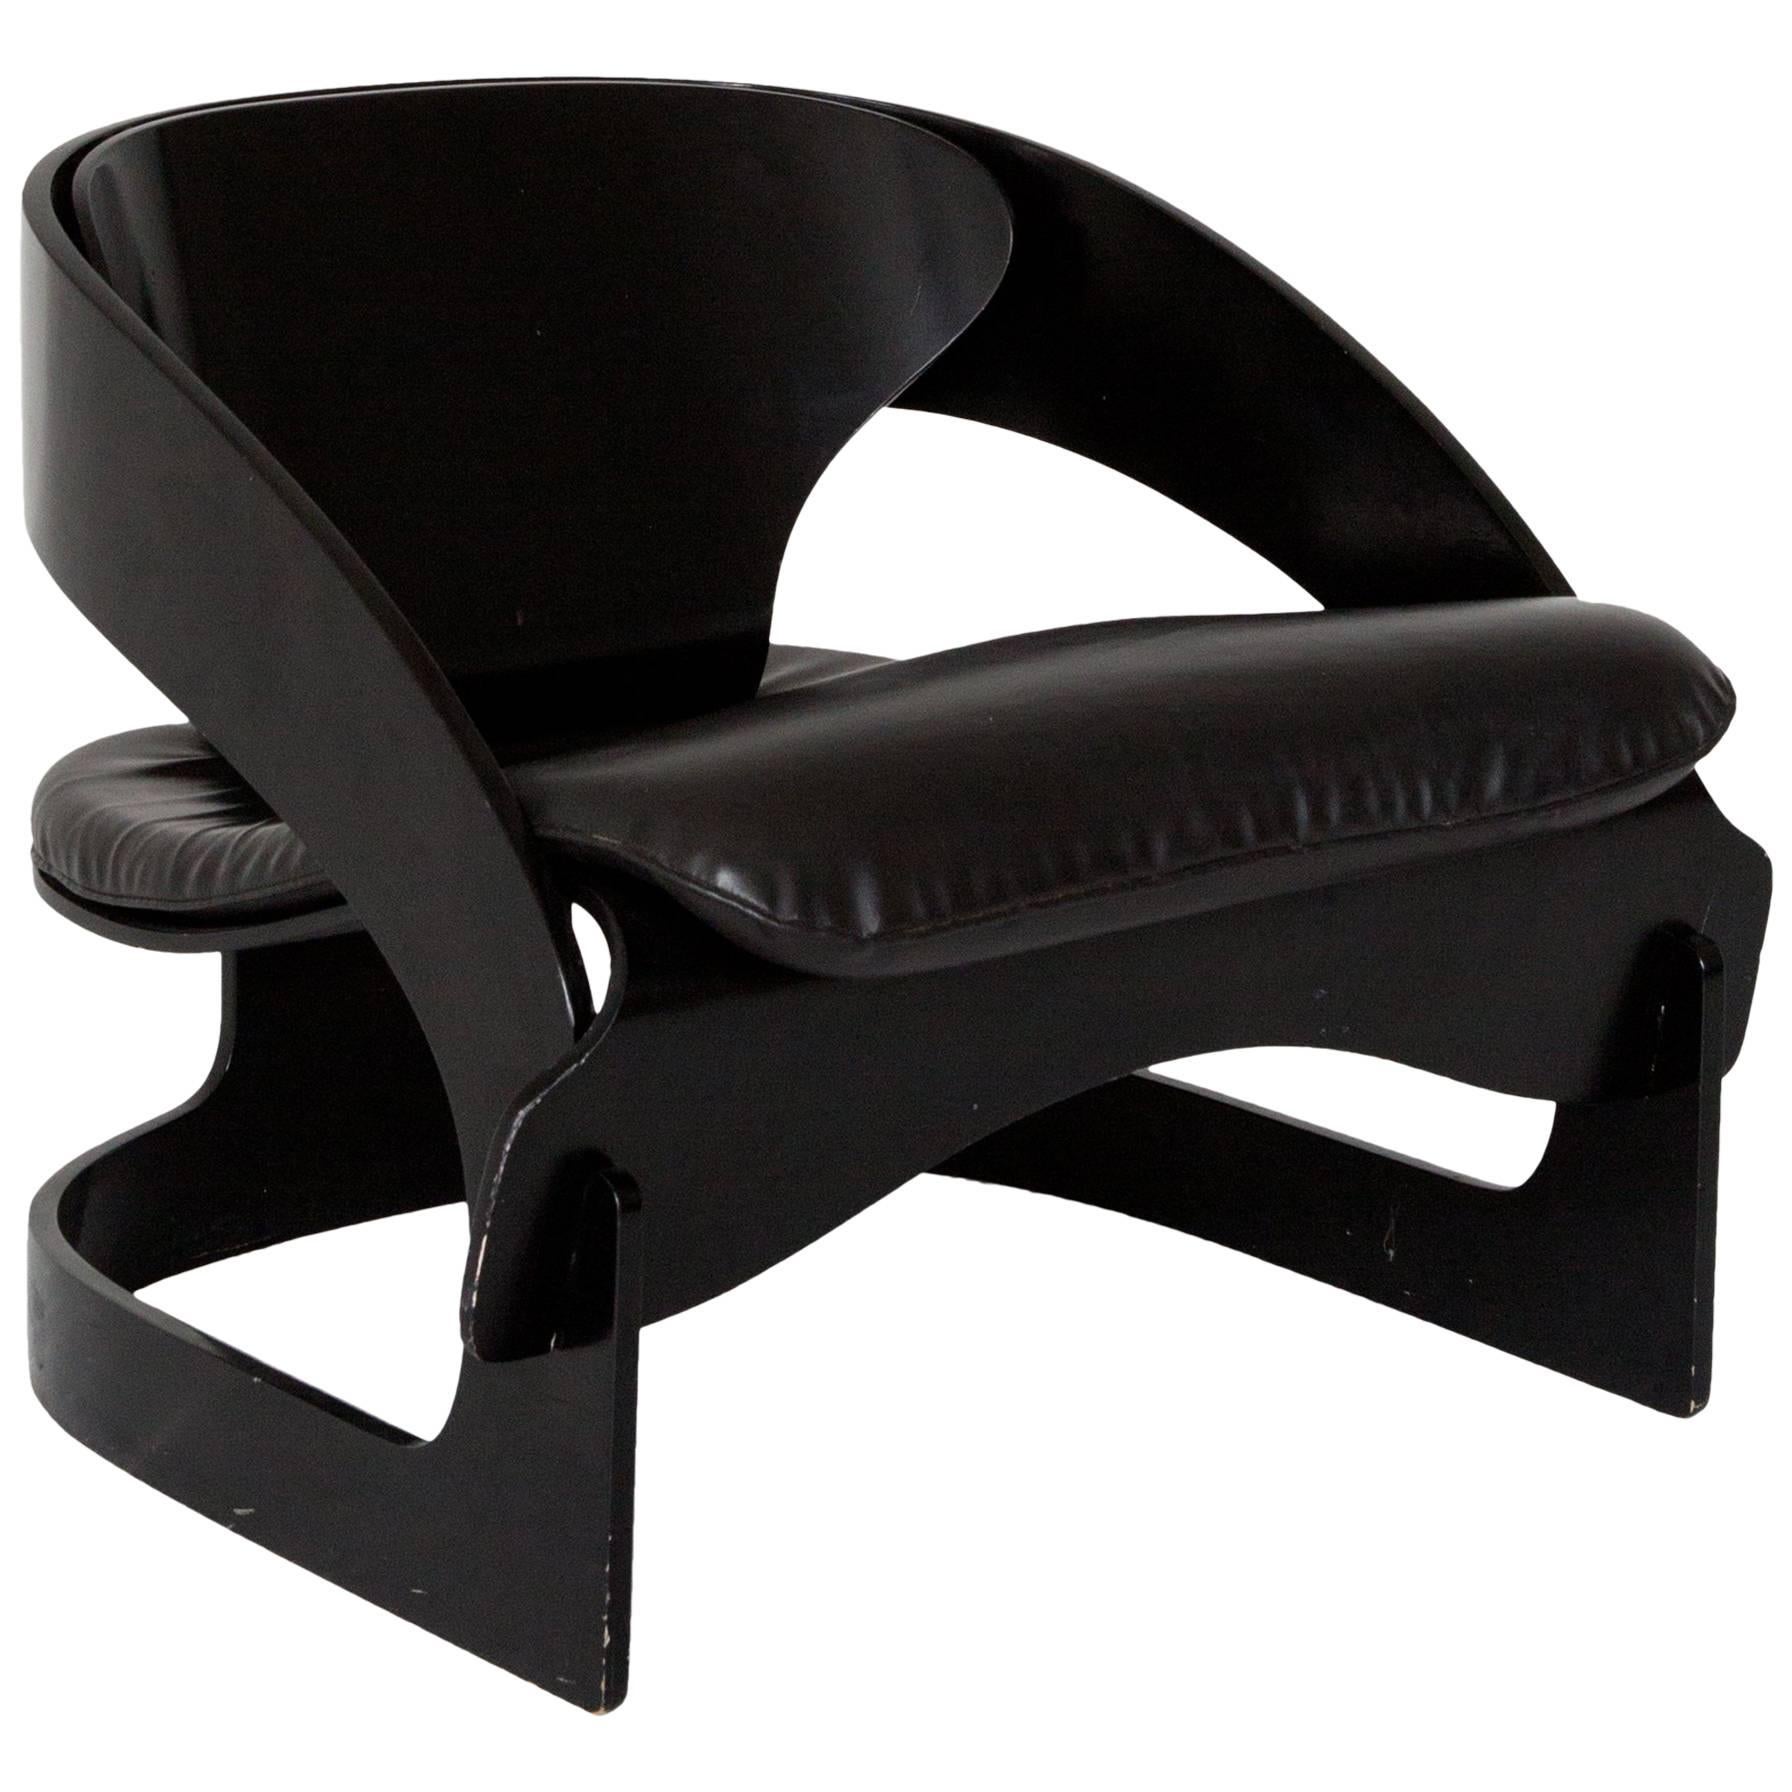 Joe Colombo Plywood Lounge Chair '4801'